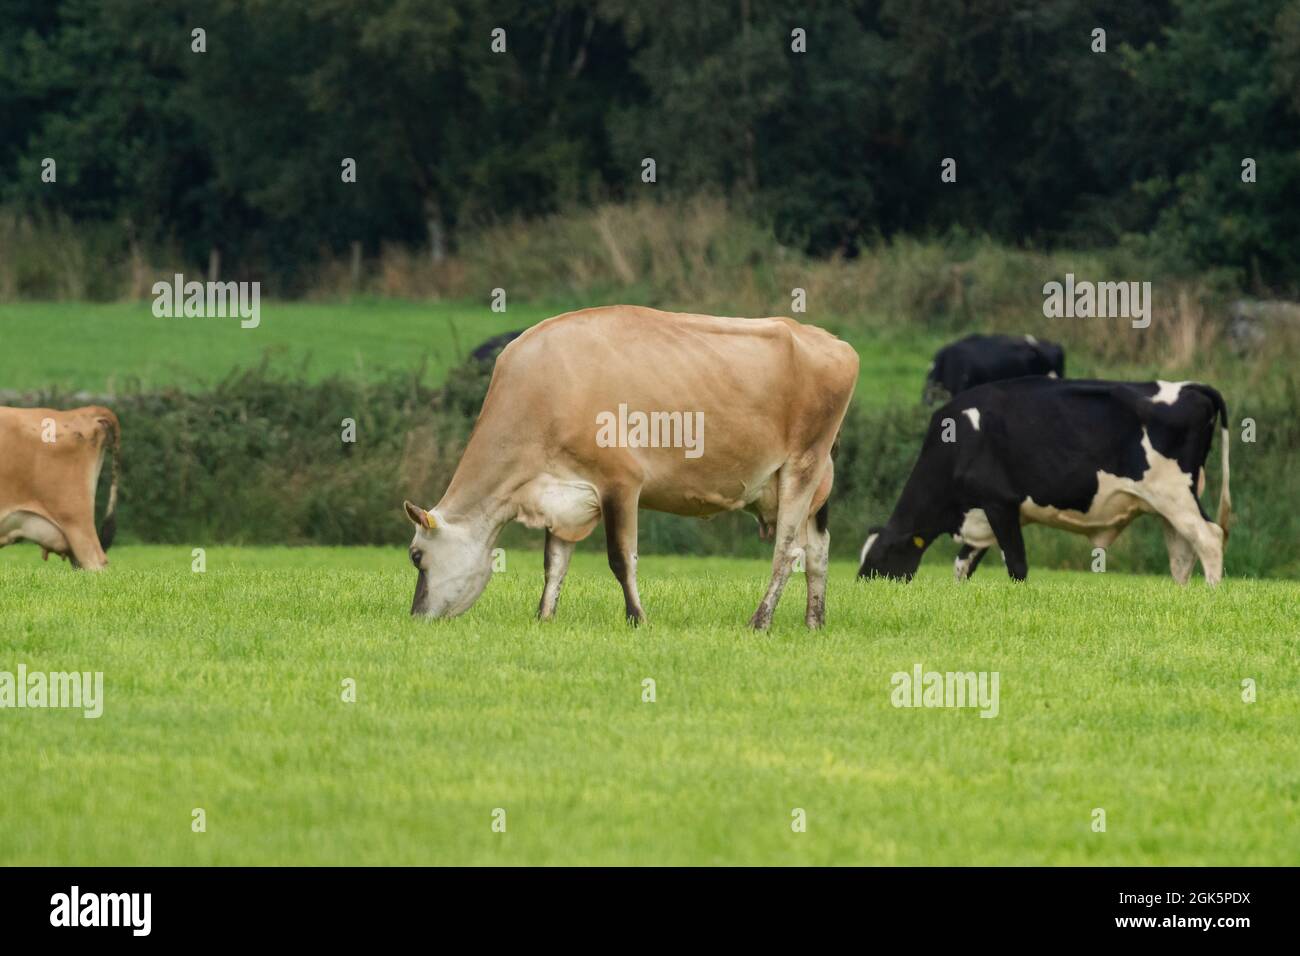 Una vaca Jersey en un campo de pastoreo junto con vacas Holstein Friesian. La vaca lleva un collar para su identificación. Foto de stock